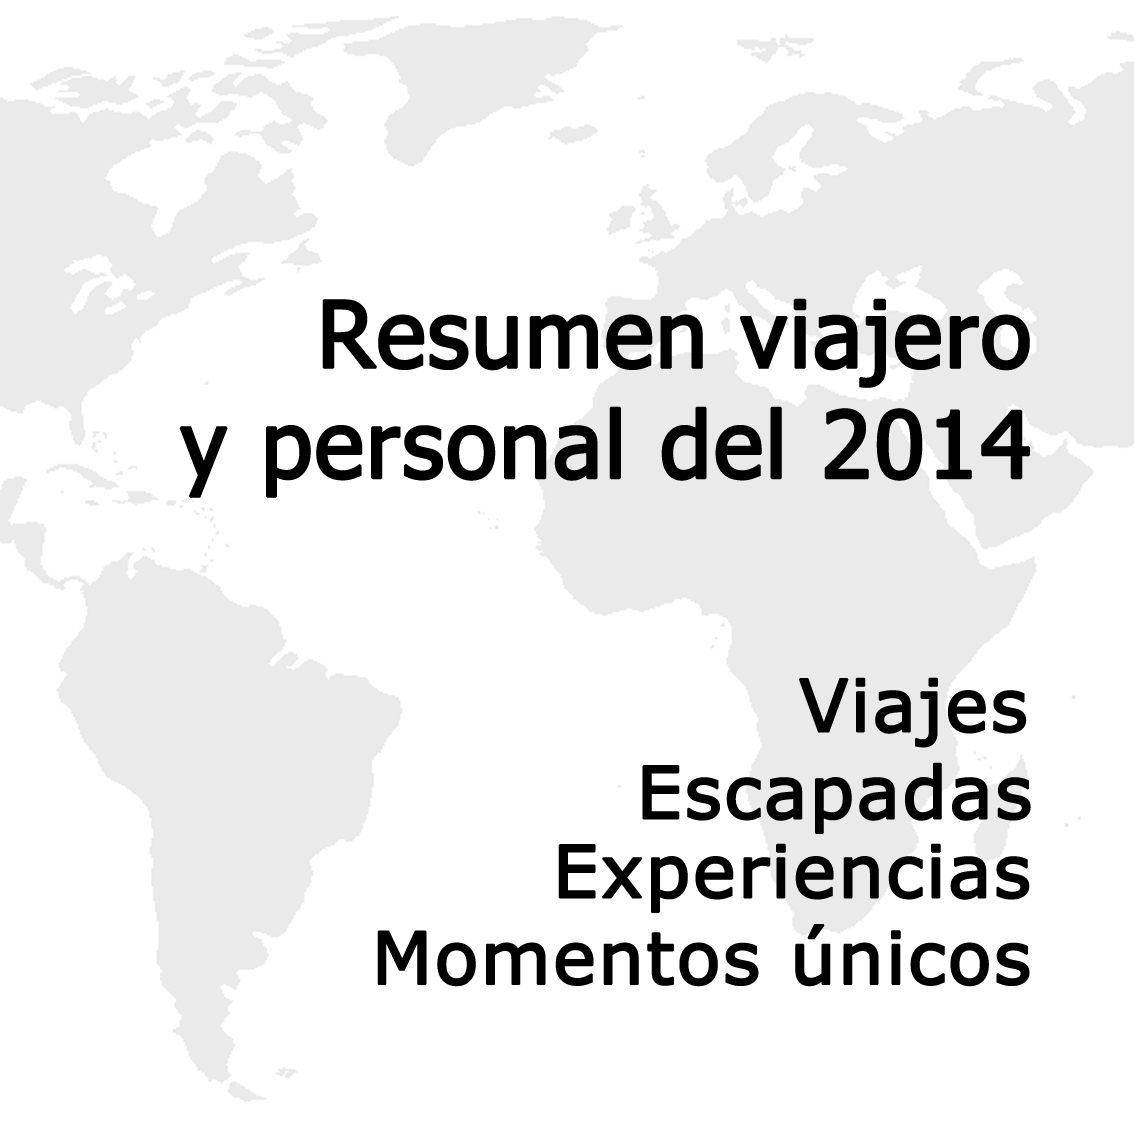 Resumen viajero y personal del 2014